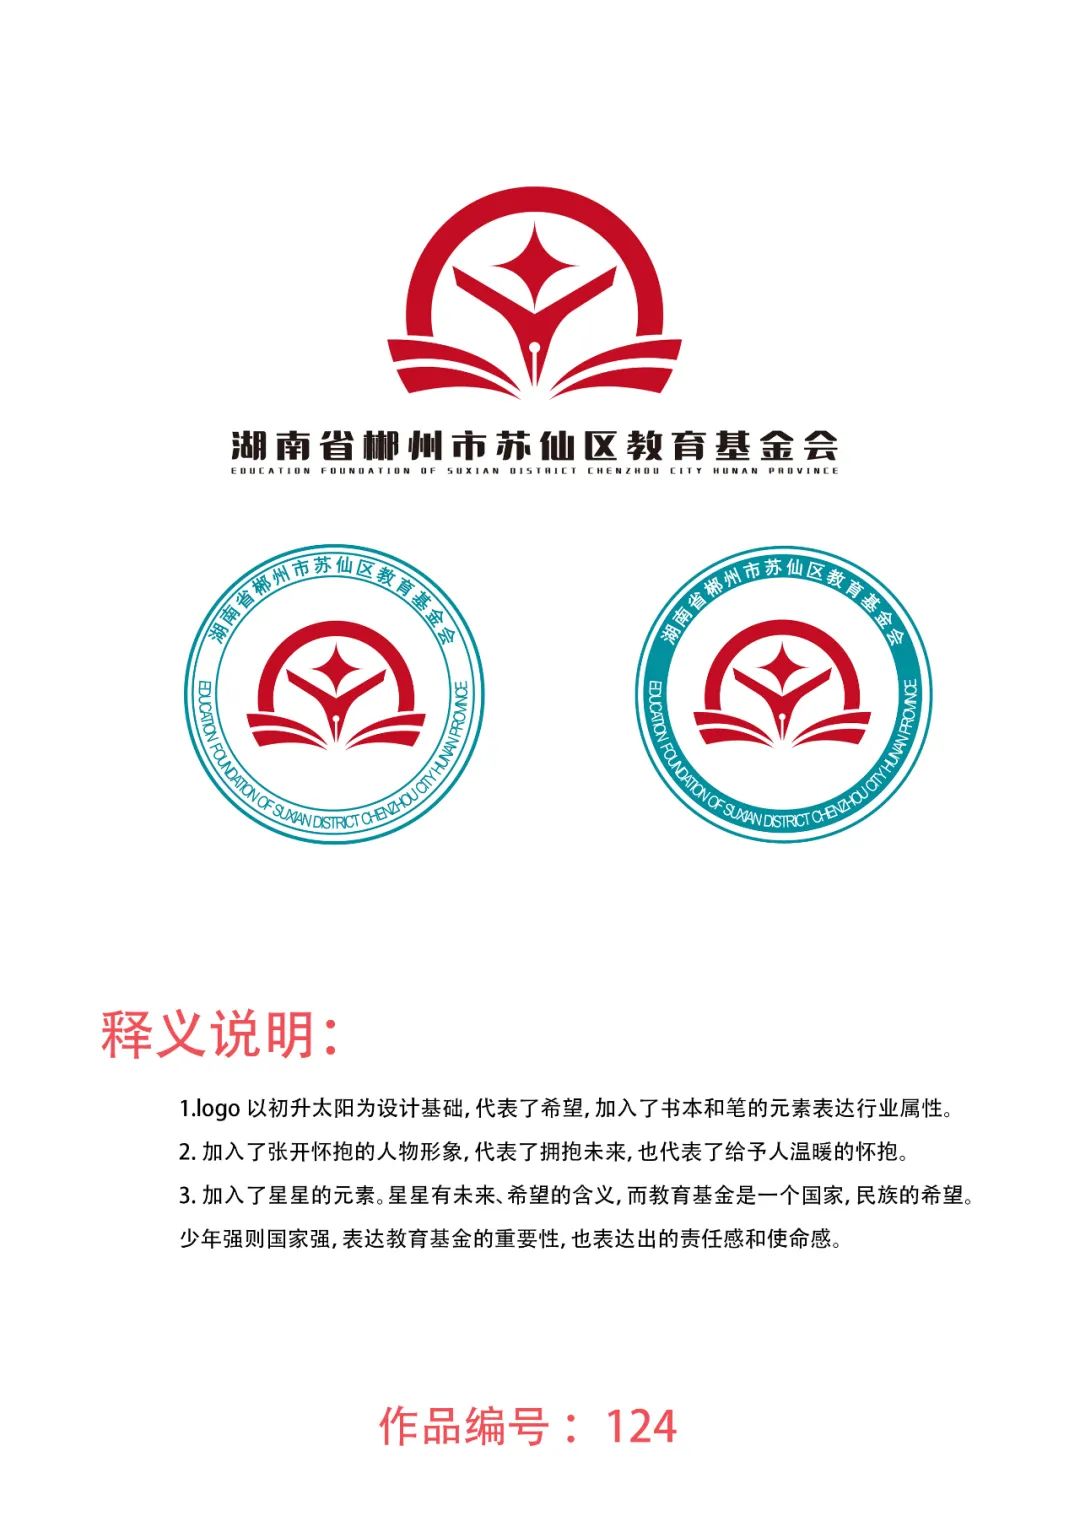 湖南省郴州市苏仙区教育基金会标志logo设计方案征集活动评选结果公布